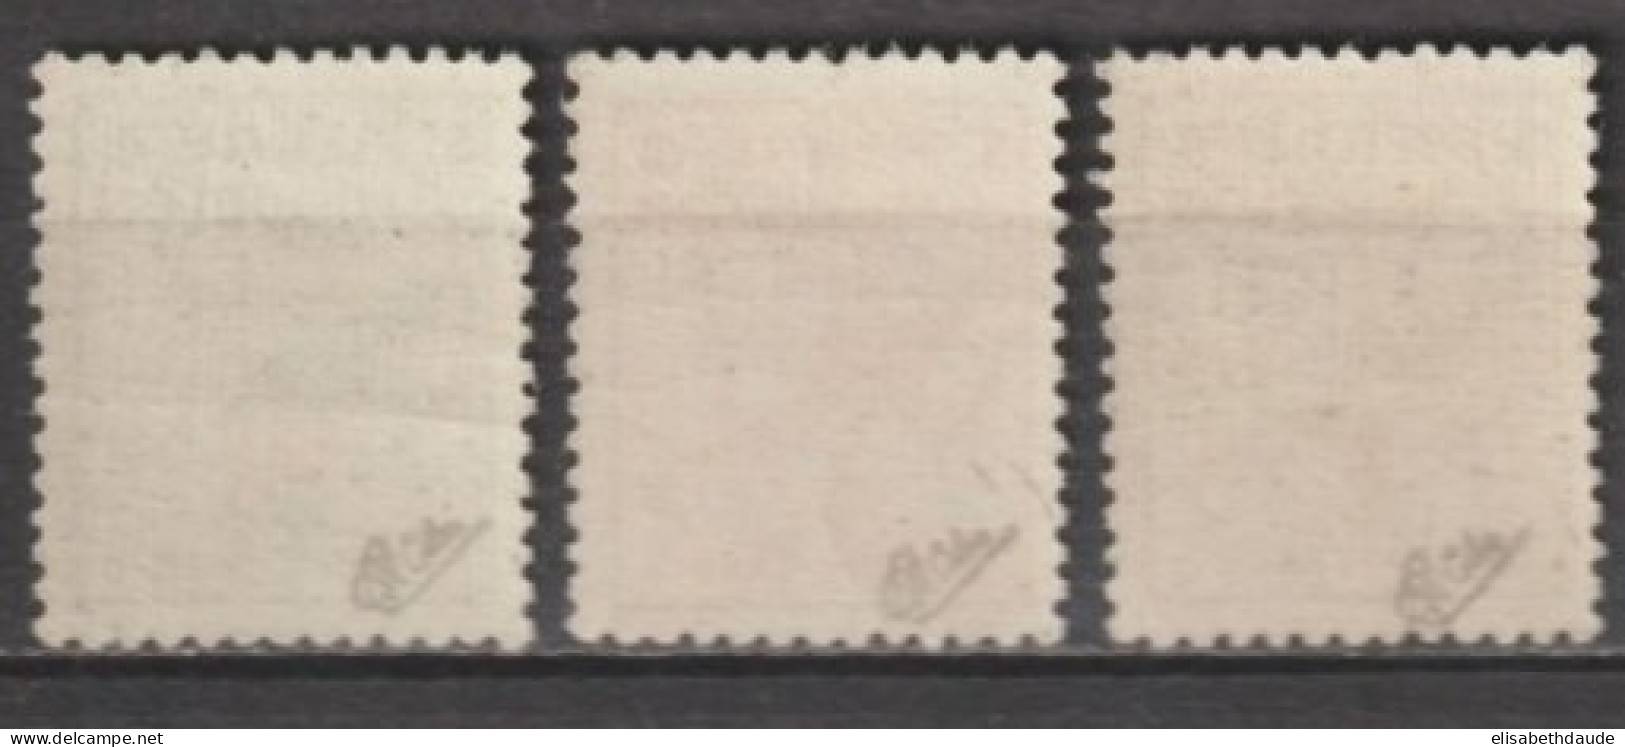 1941 - SPM FRANCE LIBRE - RARE SURCHARGE NOEL Sur TAXE - YVERT N° 48/50 ** MNH SIGNES CALVES - COTE = 580 EUR. - Ungebraucht